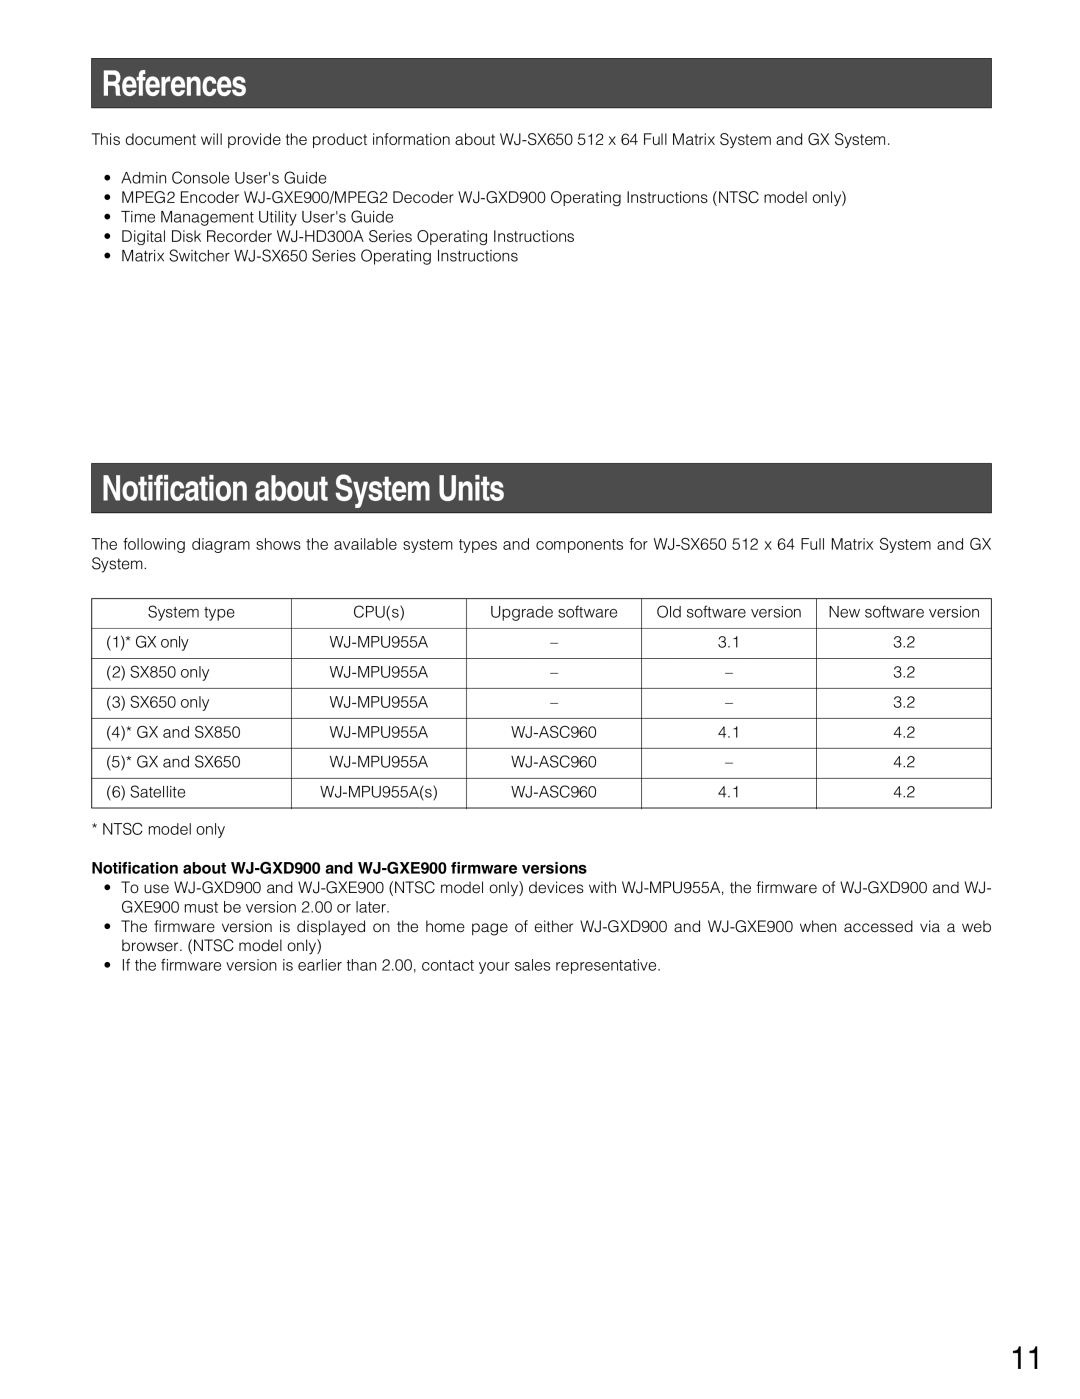 Panasonic WJ-MPU955A manual References, Notification about System Units 